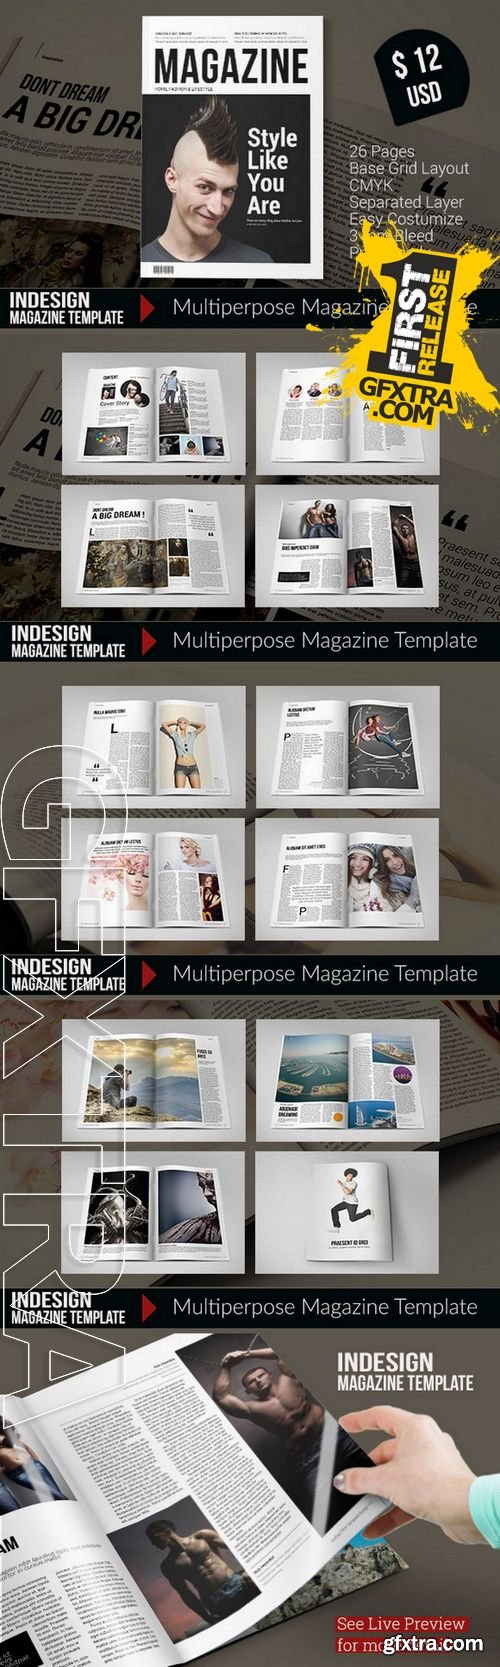 Indesign Magazine Template - CM 219739